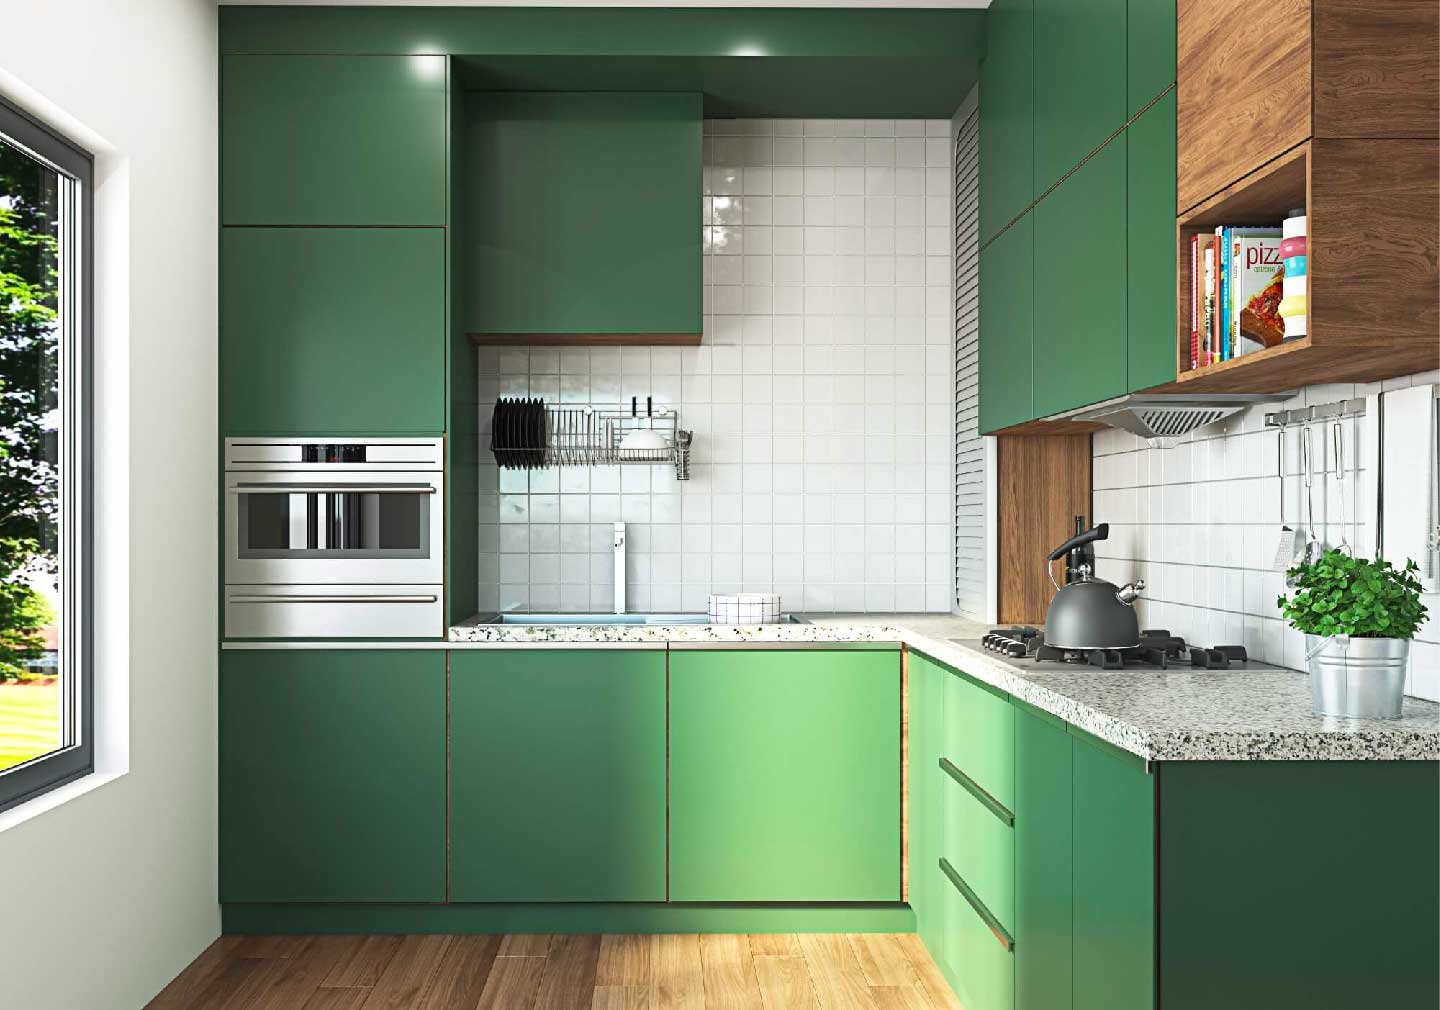 Bring in the Greens - kitchen interior design